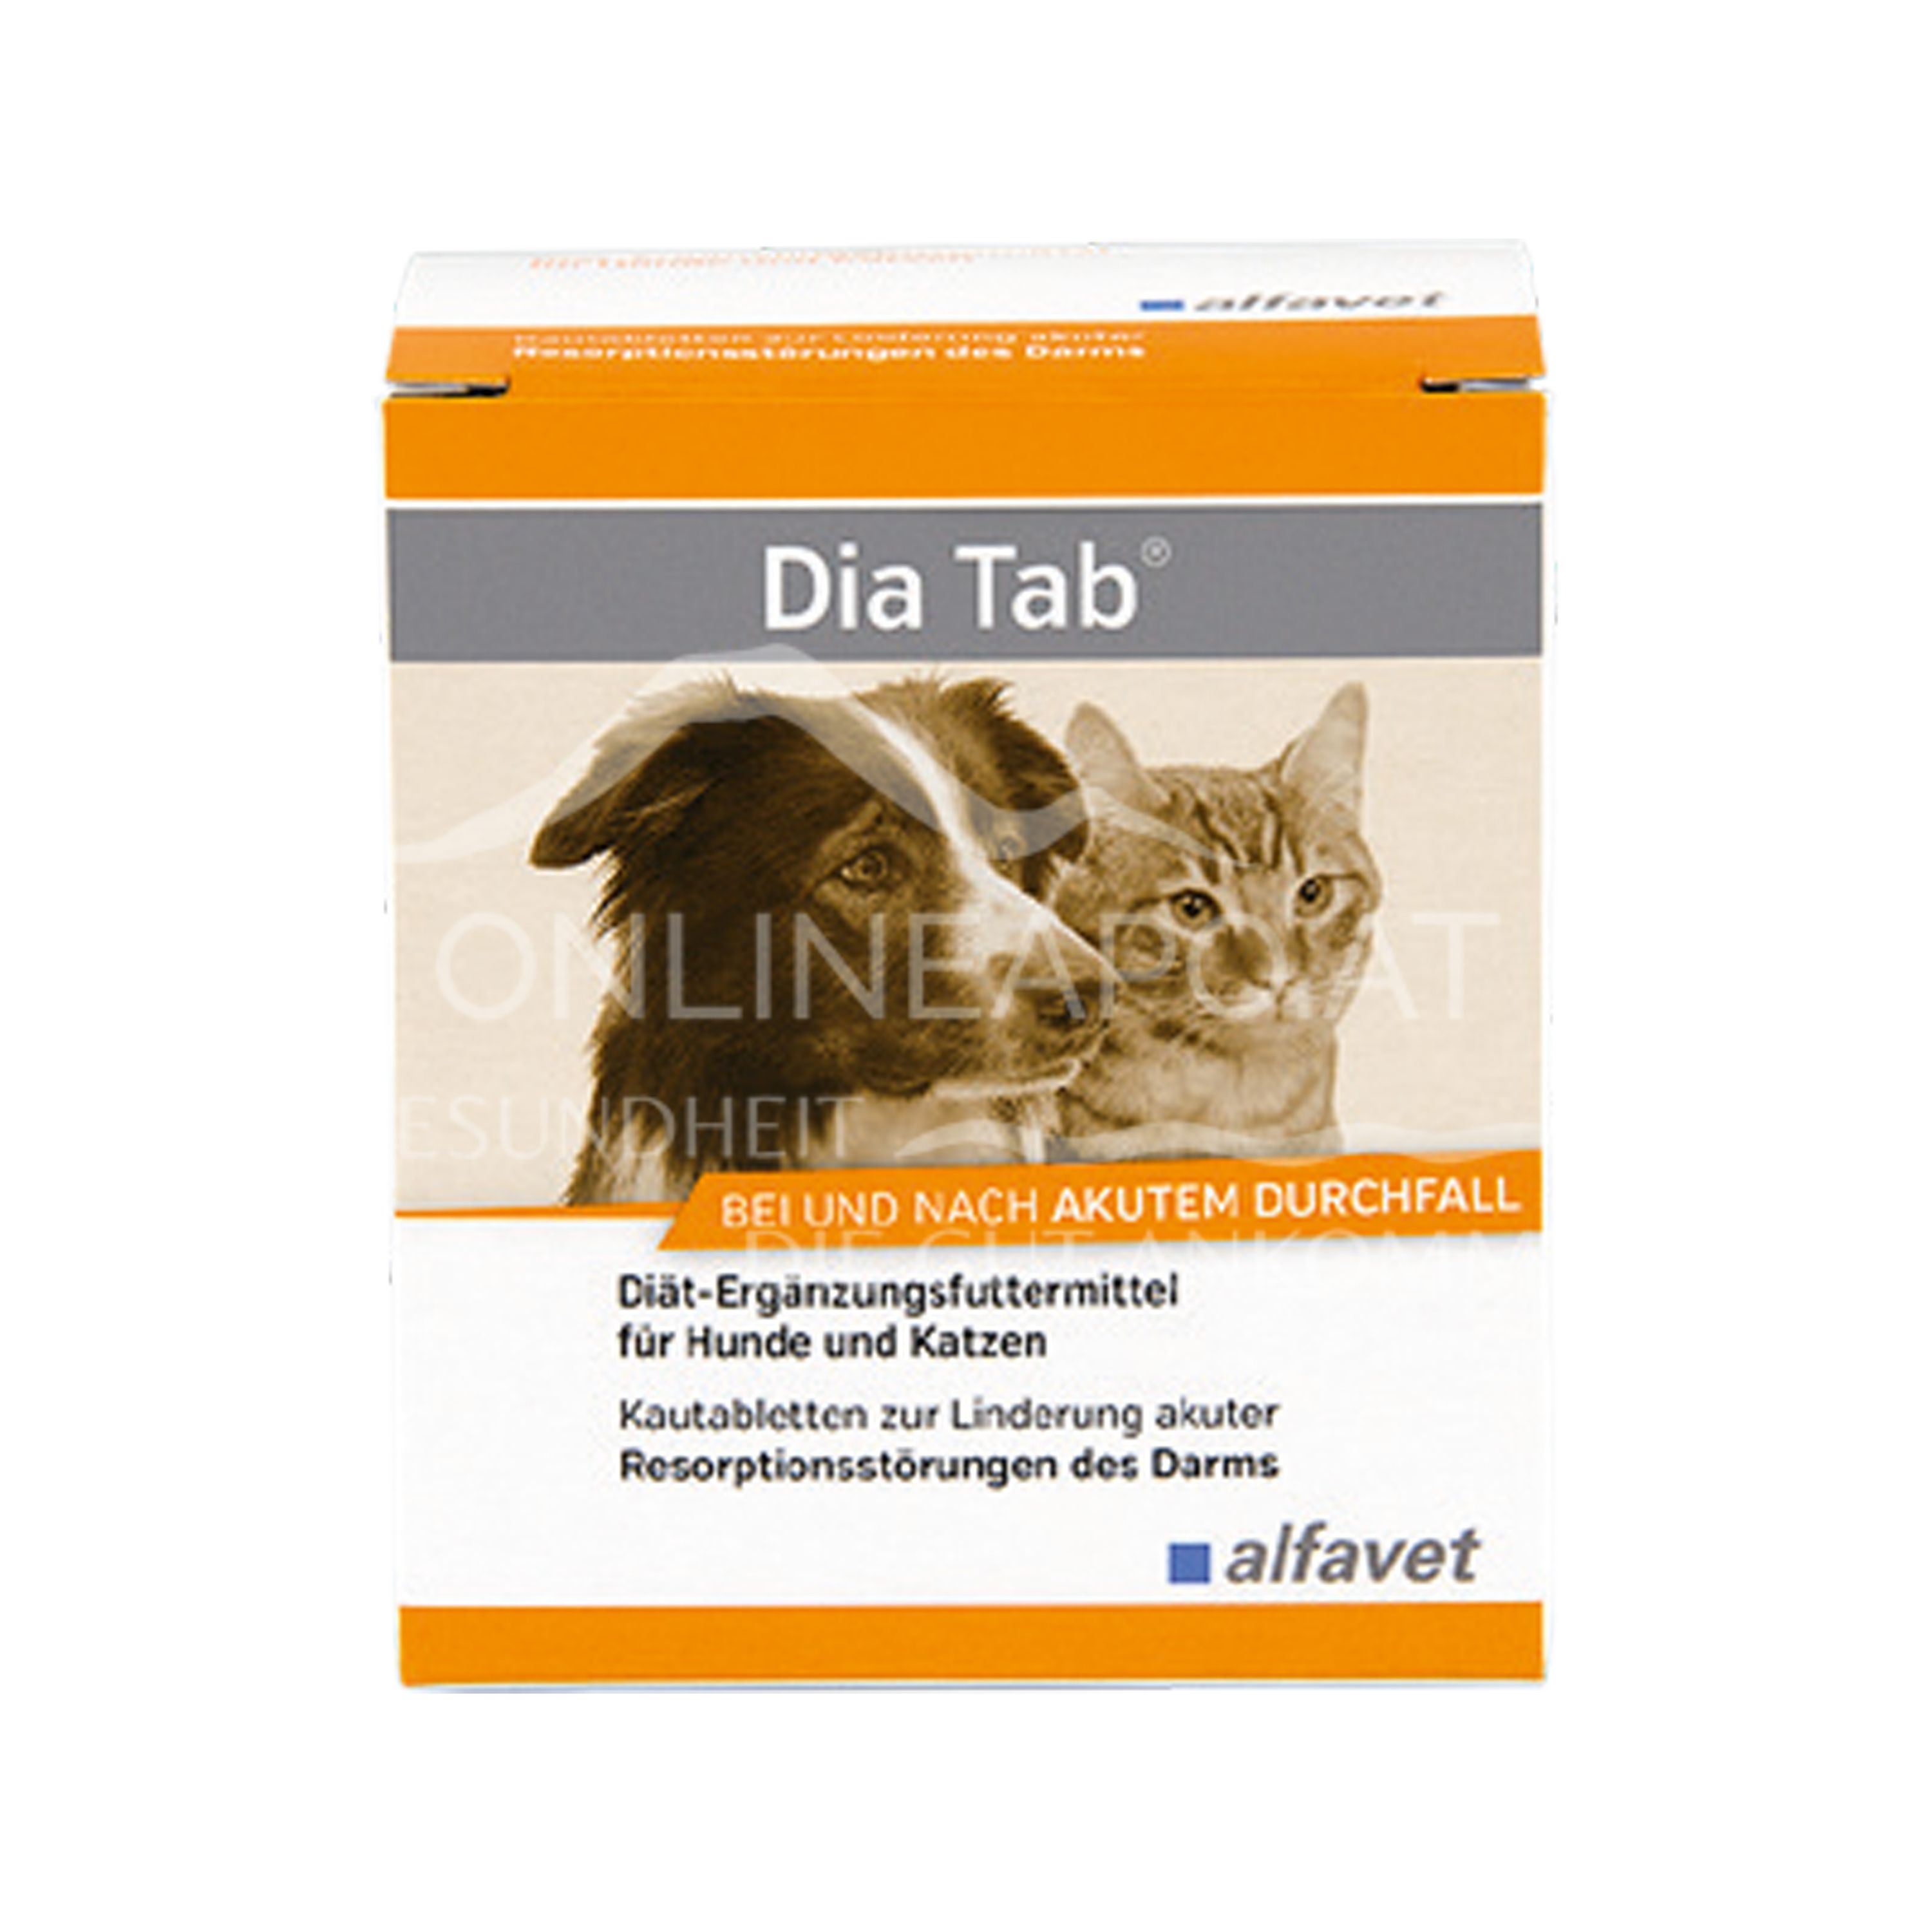 alfavet Dia Tab Kautabletten für Hunde und Katzen 5,5 g